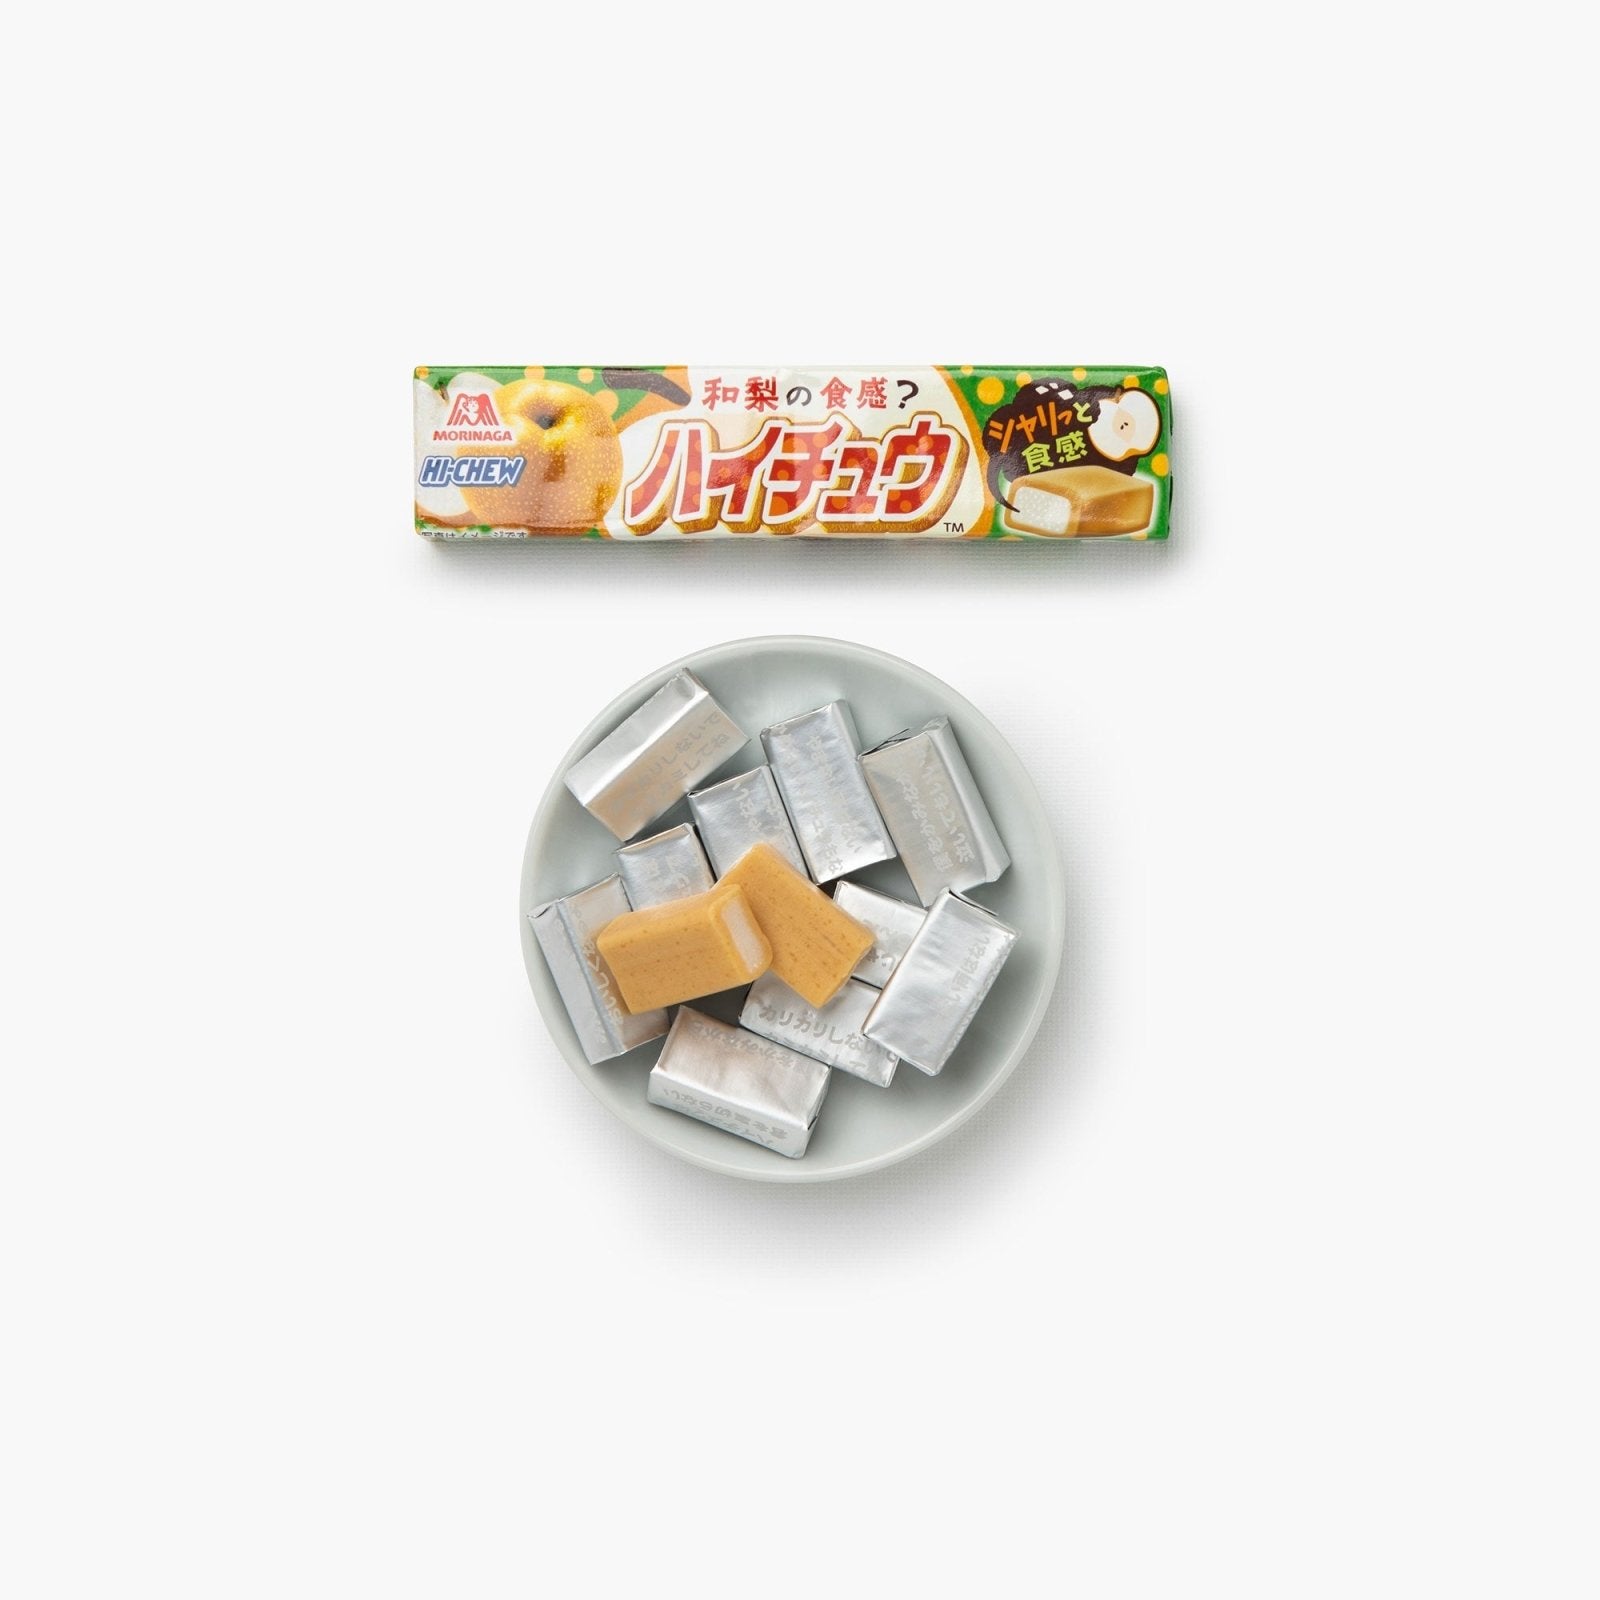 Bonbons Hi-Chew à la poire - 50g - Morinaga -iRASSHAi